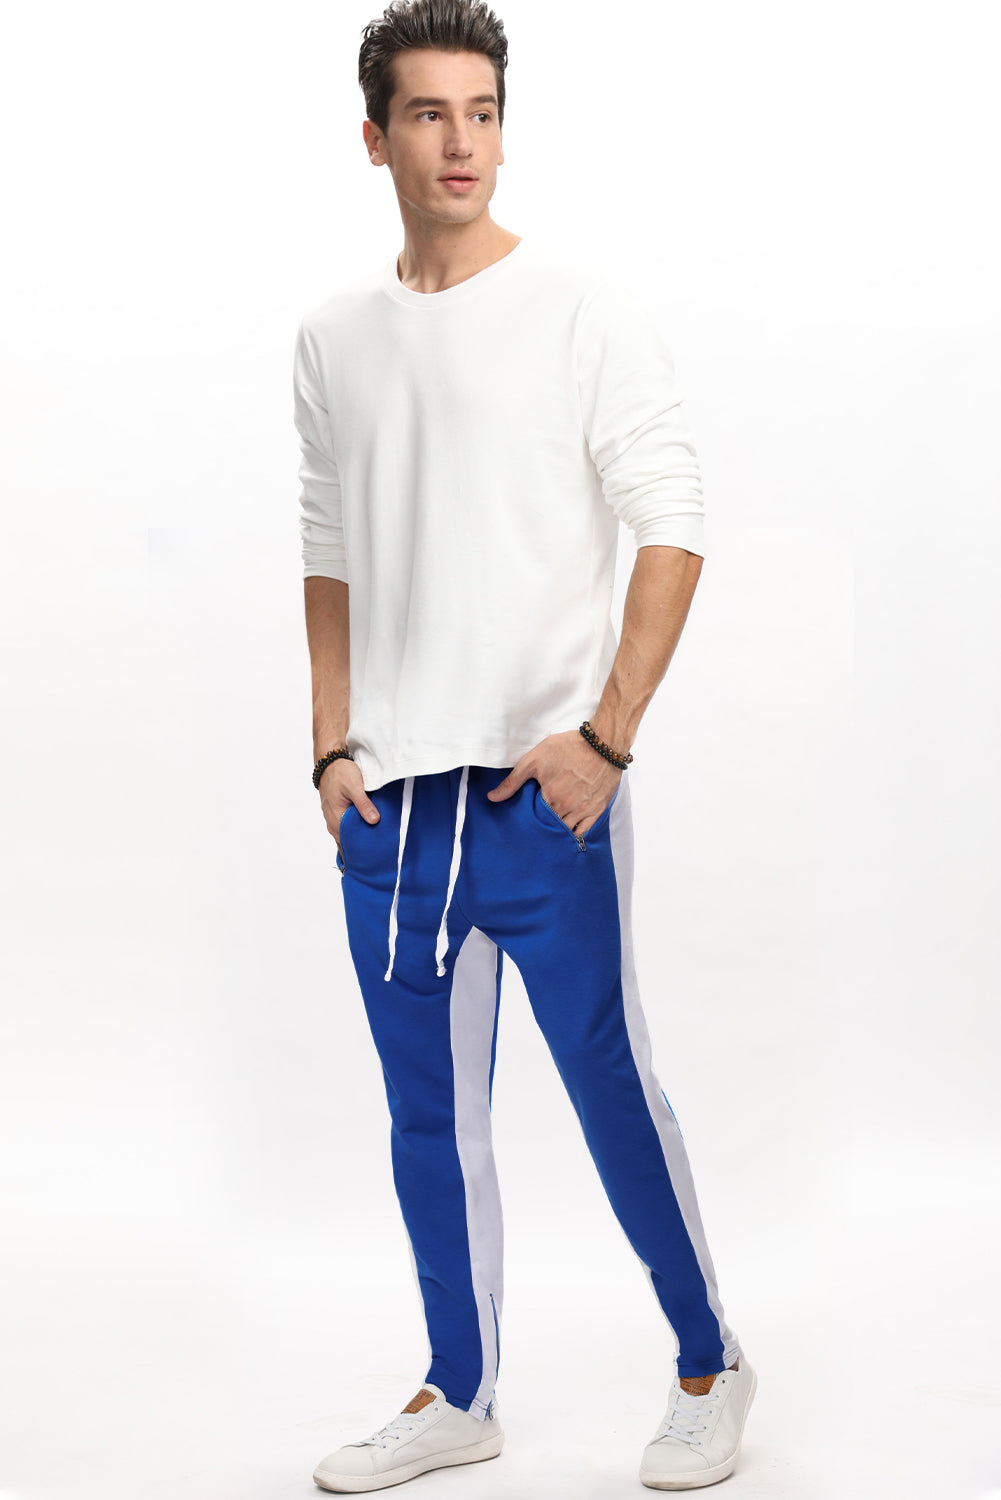 Blue Colorblock Patchwork Zipper Casual Mens Joggers Men's Pants JT's Designer Fashion